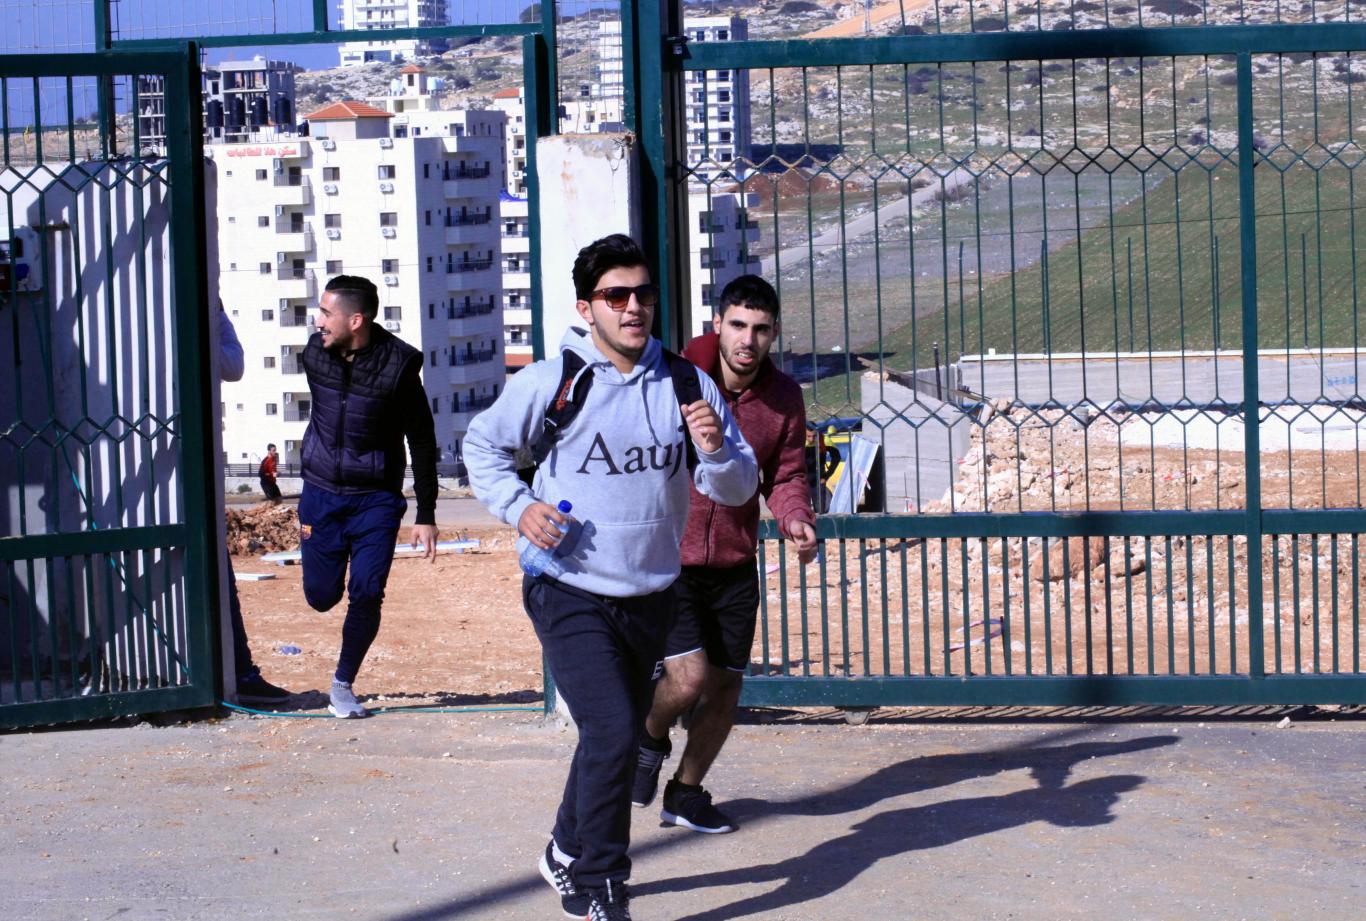 مارثون فلسطين الدولي الخامس تحت شعار "الركض من اجل الحرية"